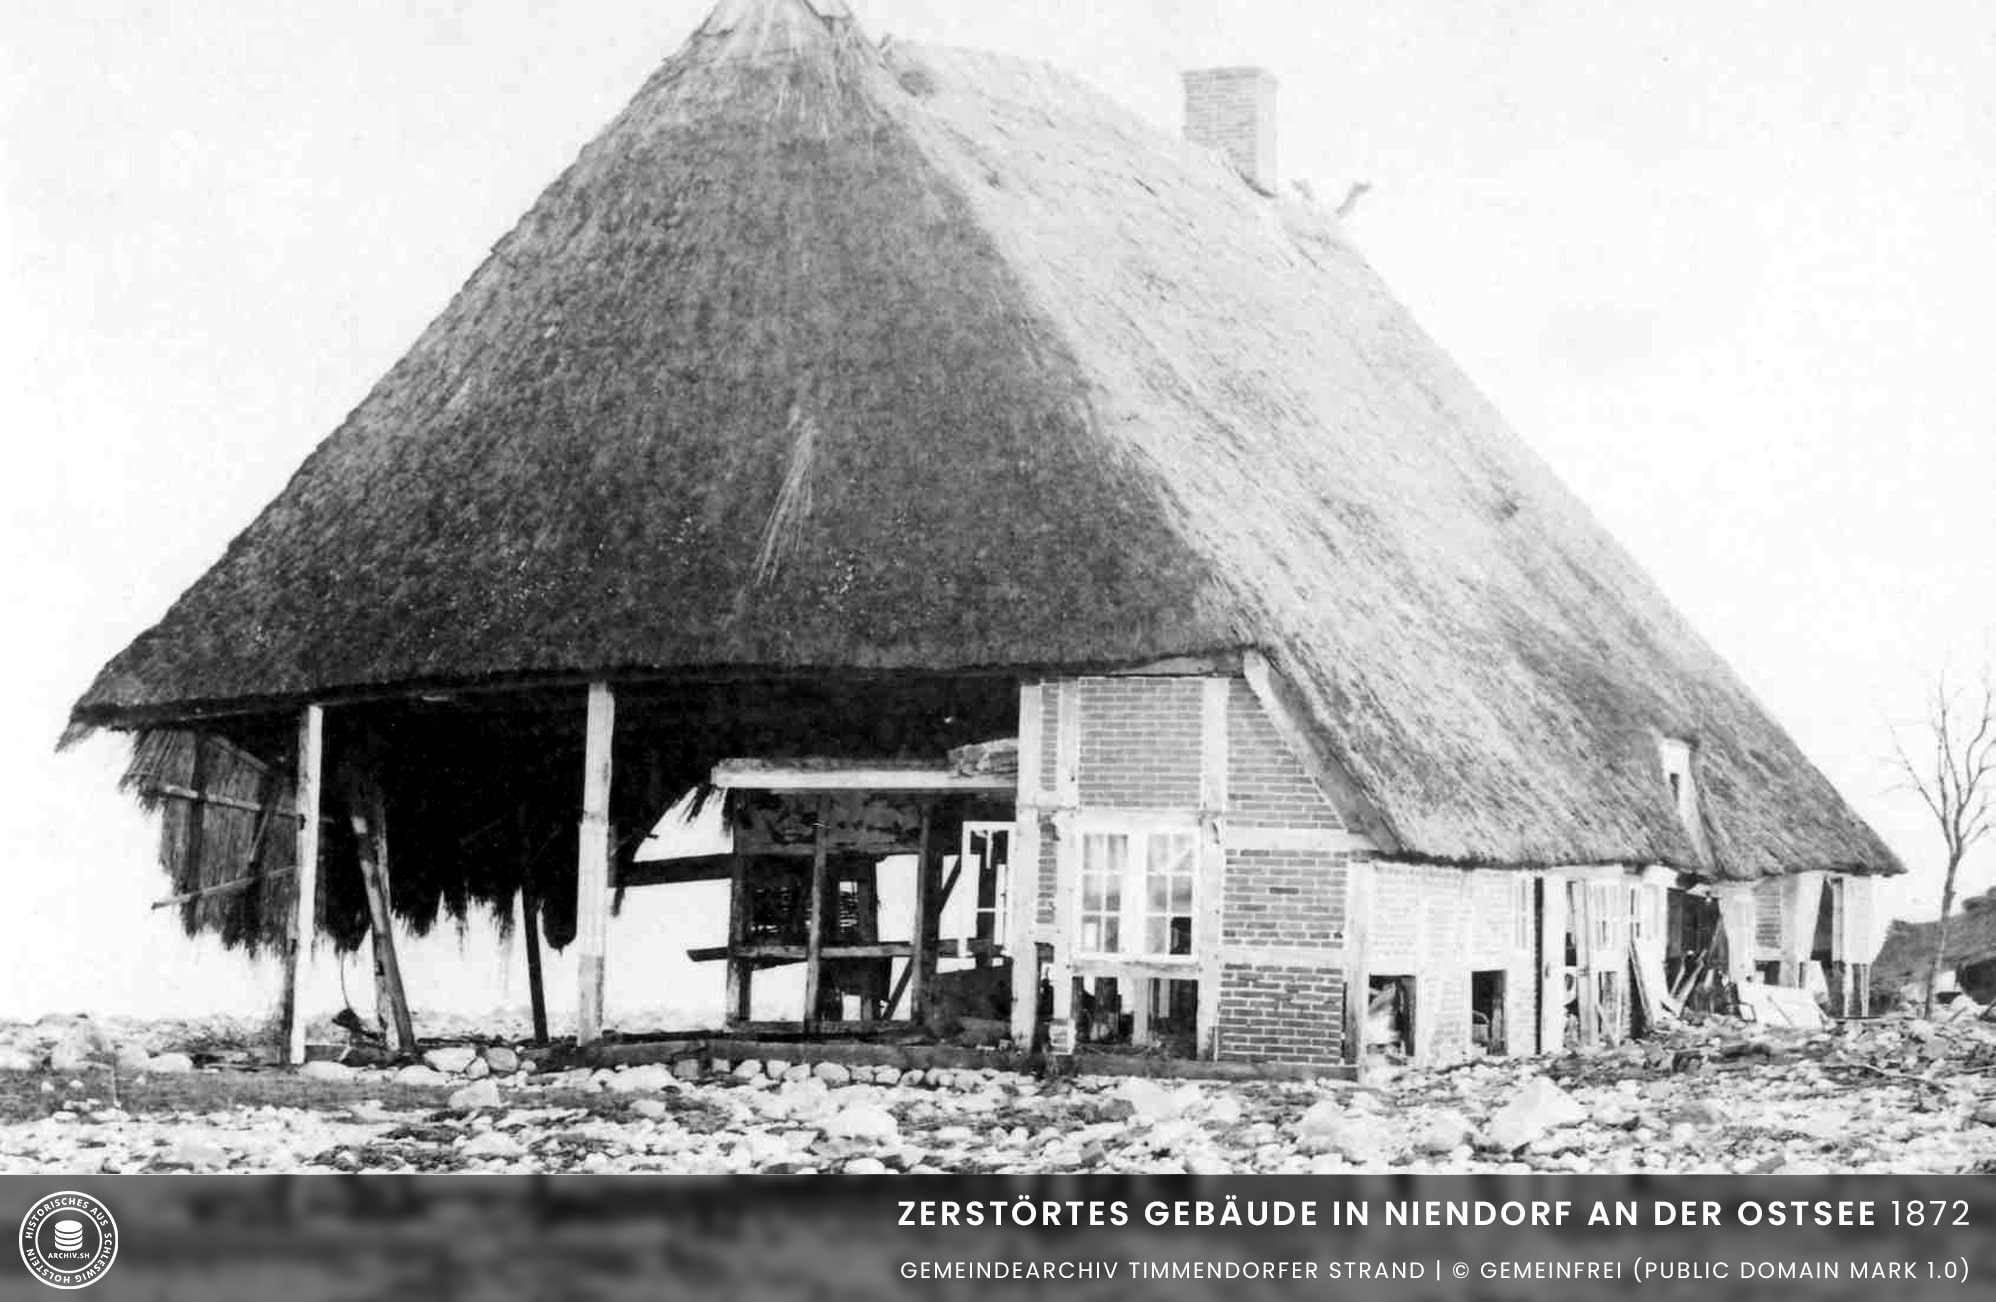 Zerstörtes-Gebäude-in-Niendorf-an-der-Ostsee-1872-min